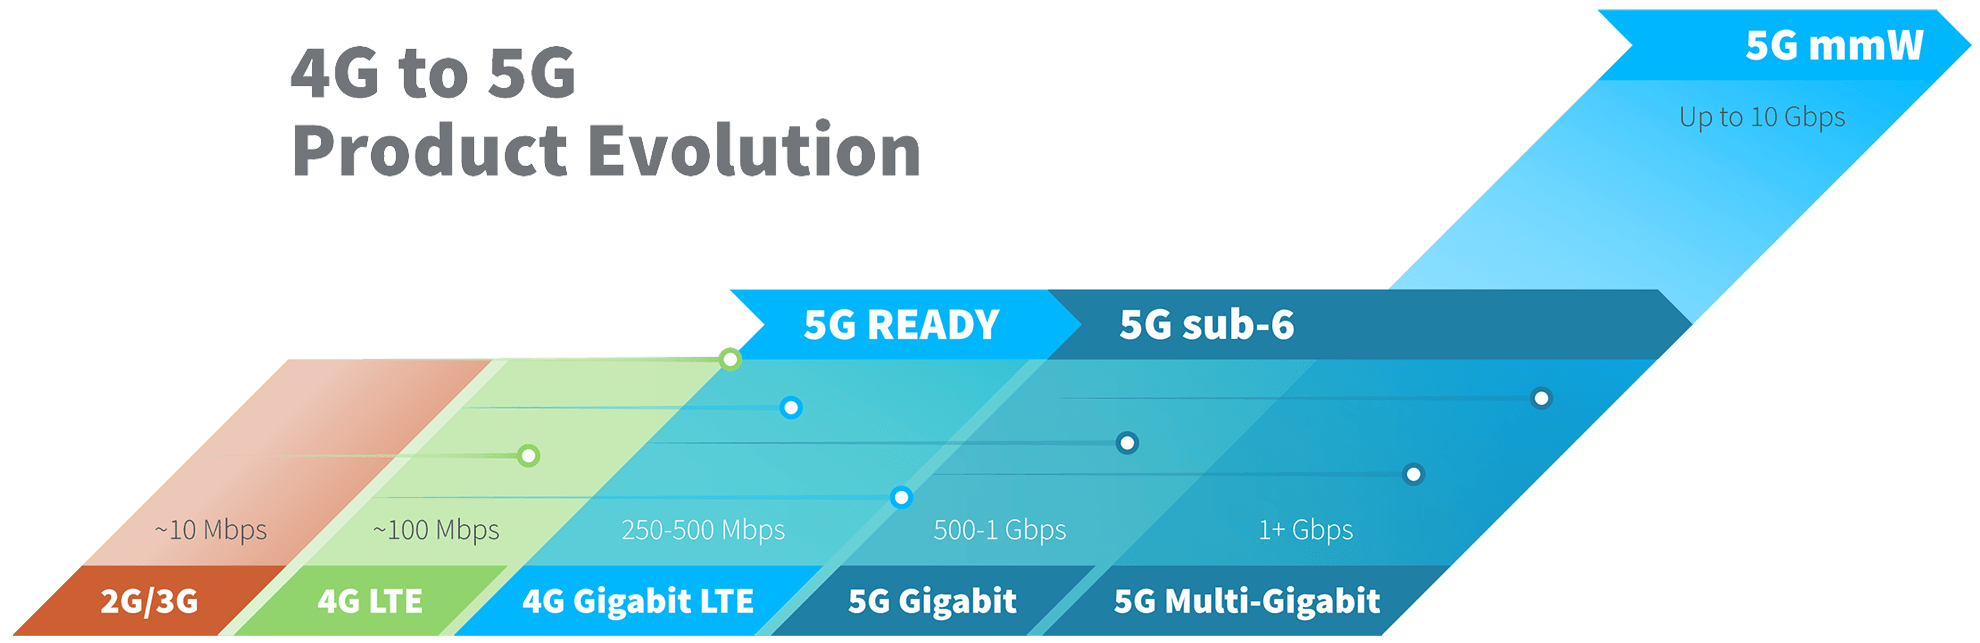 4G bis 5G Produktentwicklung